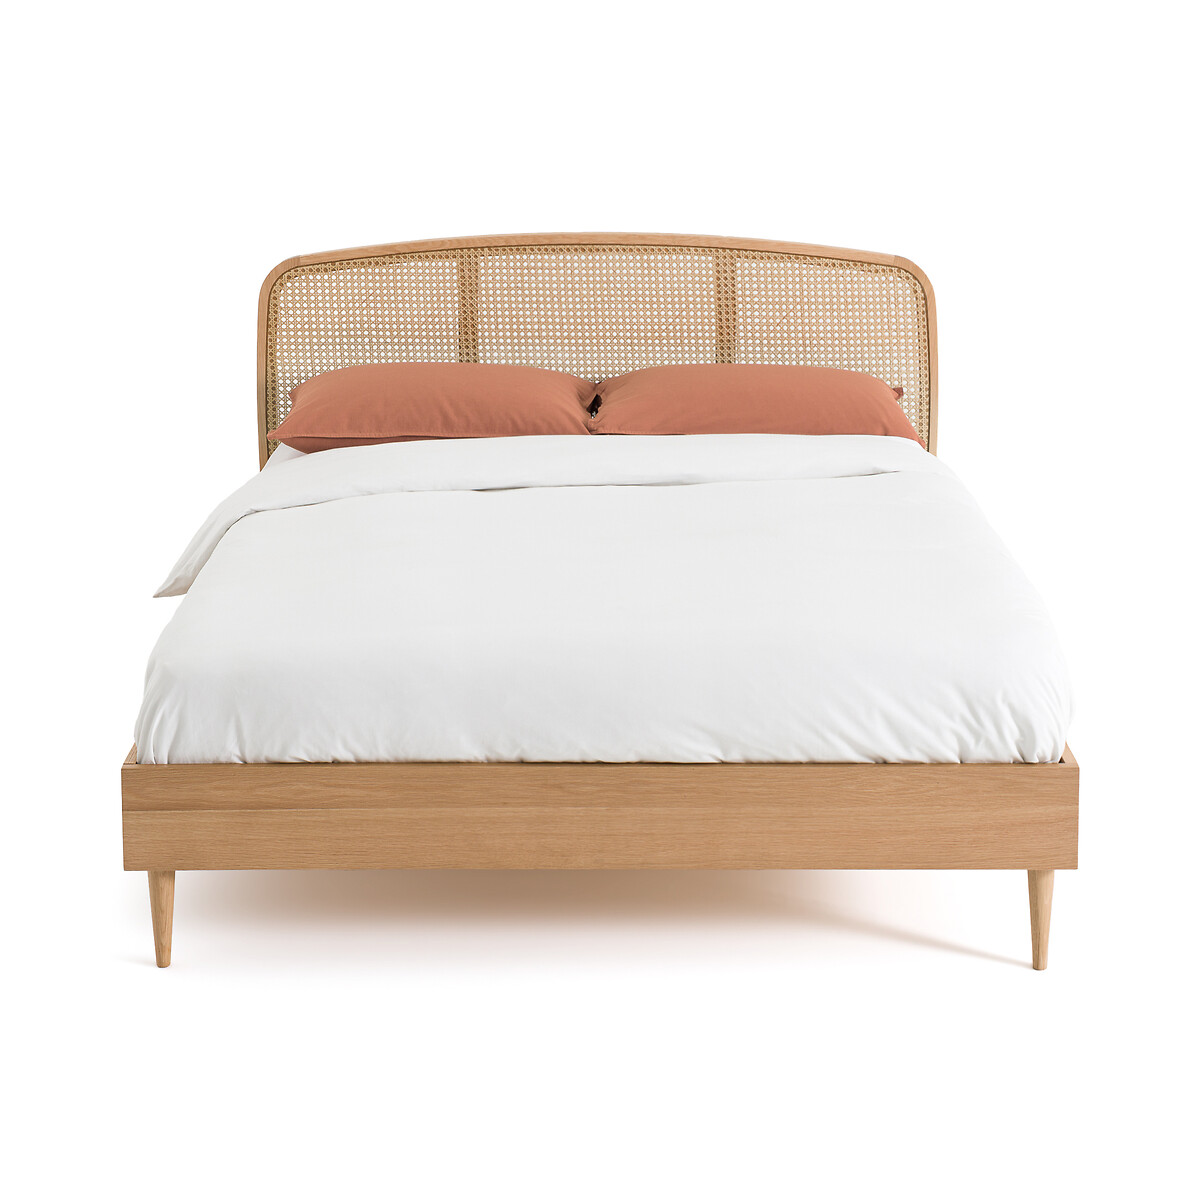 Кровать из дуба и плетеного материала с реечным кроватным основанием Buisseau  140 x 190 см каштановый LaRedoute, размер 140 x 190 см - фото 2